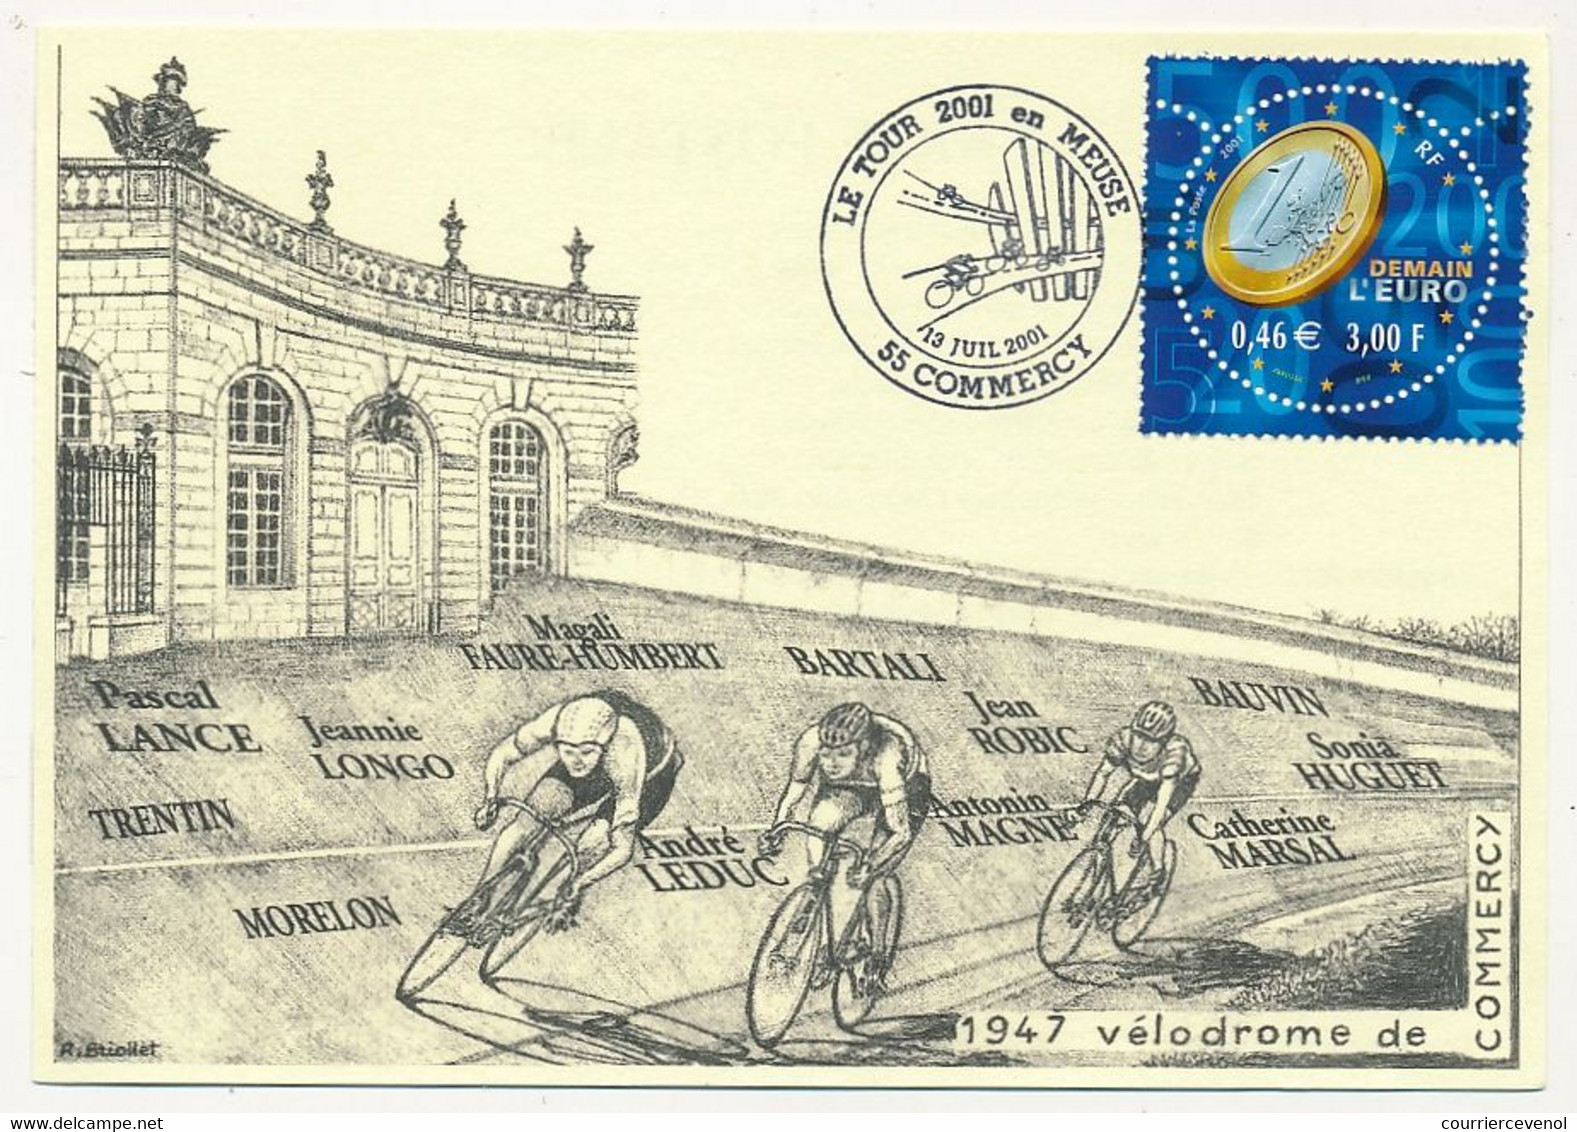 FRANCE - CPM Commémorative - Le Tour 2001 En Meuse - Vélodrome De Commercy 19/7/2001 - Oblit. Temporaire - Wielrennen